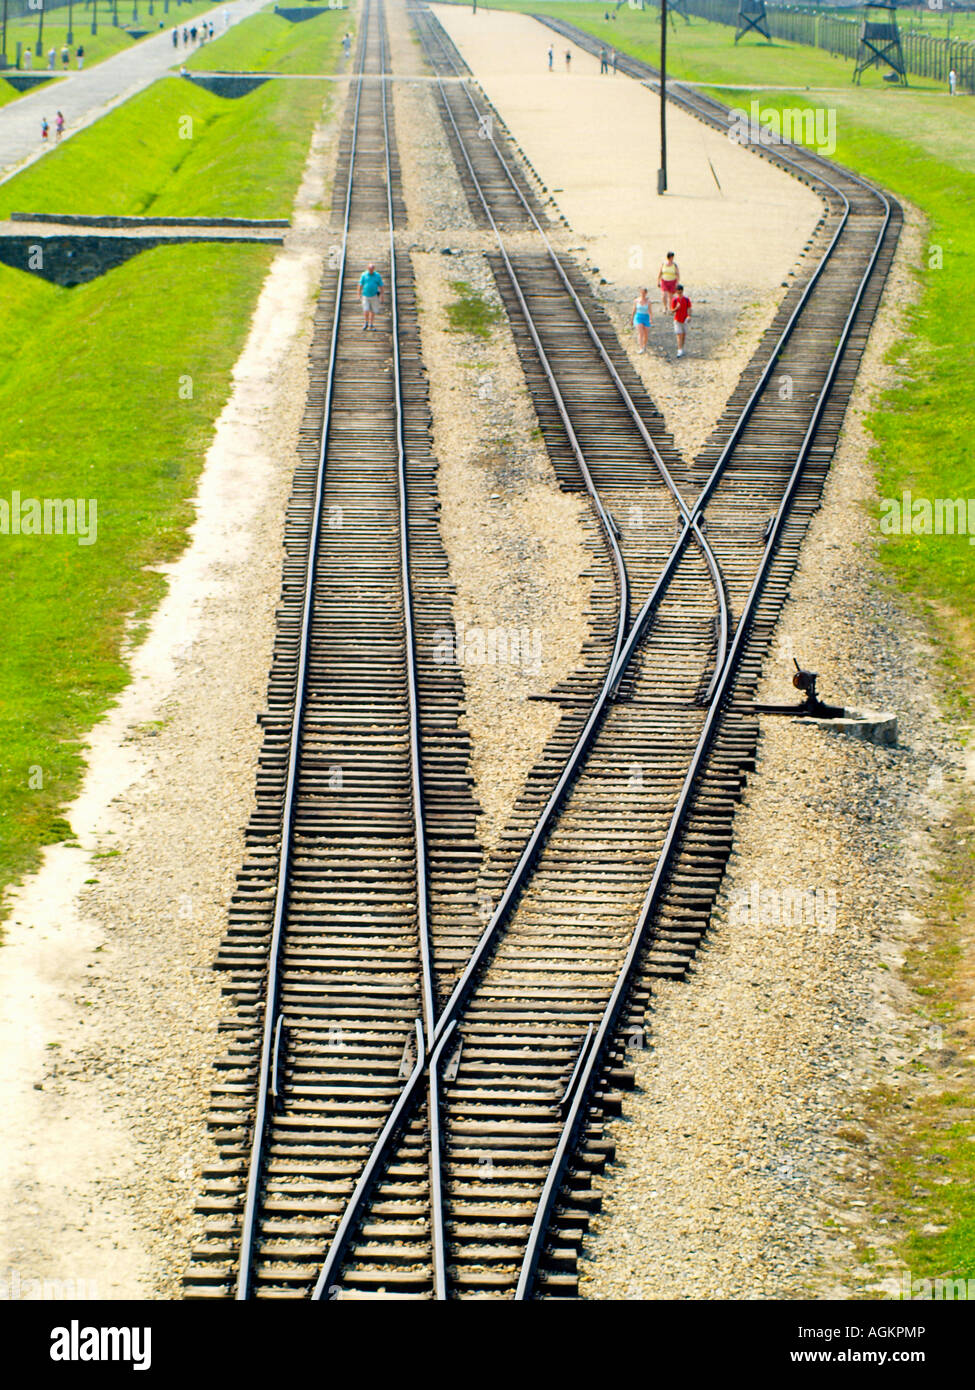 Lignes de chemin de fer apparemment sans fin menant dans le camp de concentration d'Auschwitz Birkenau à l'extérieur de Cracovie, Pologne Banque D'Images